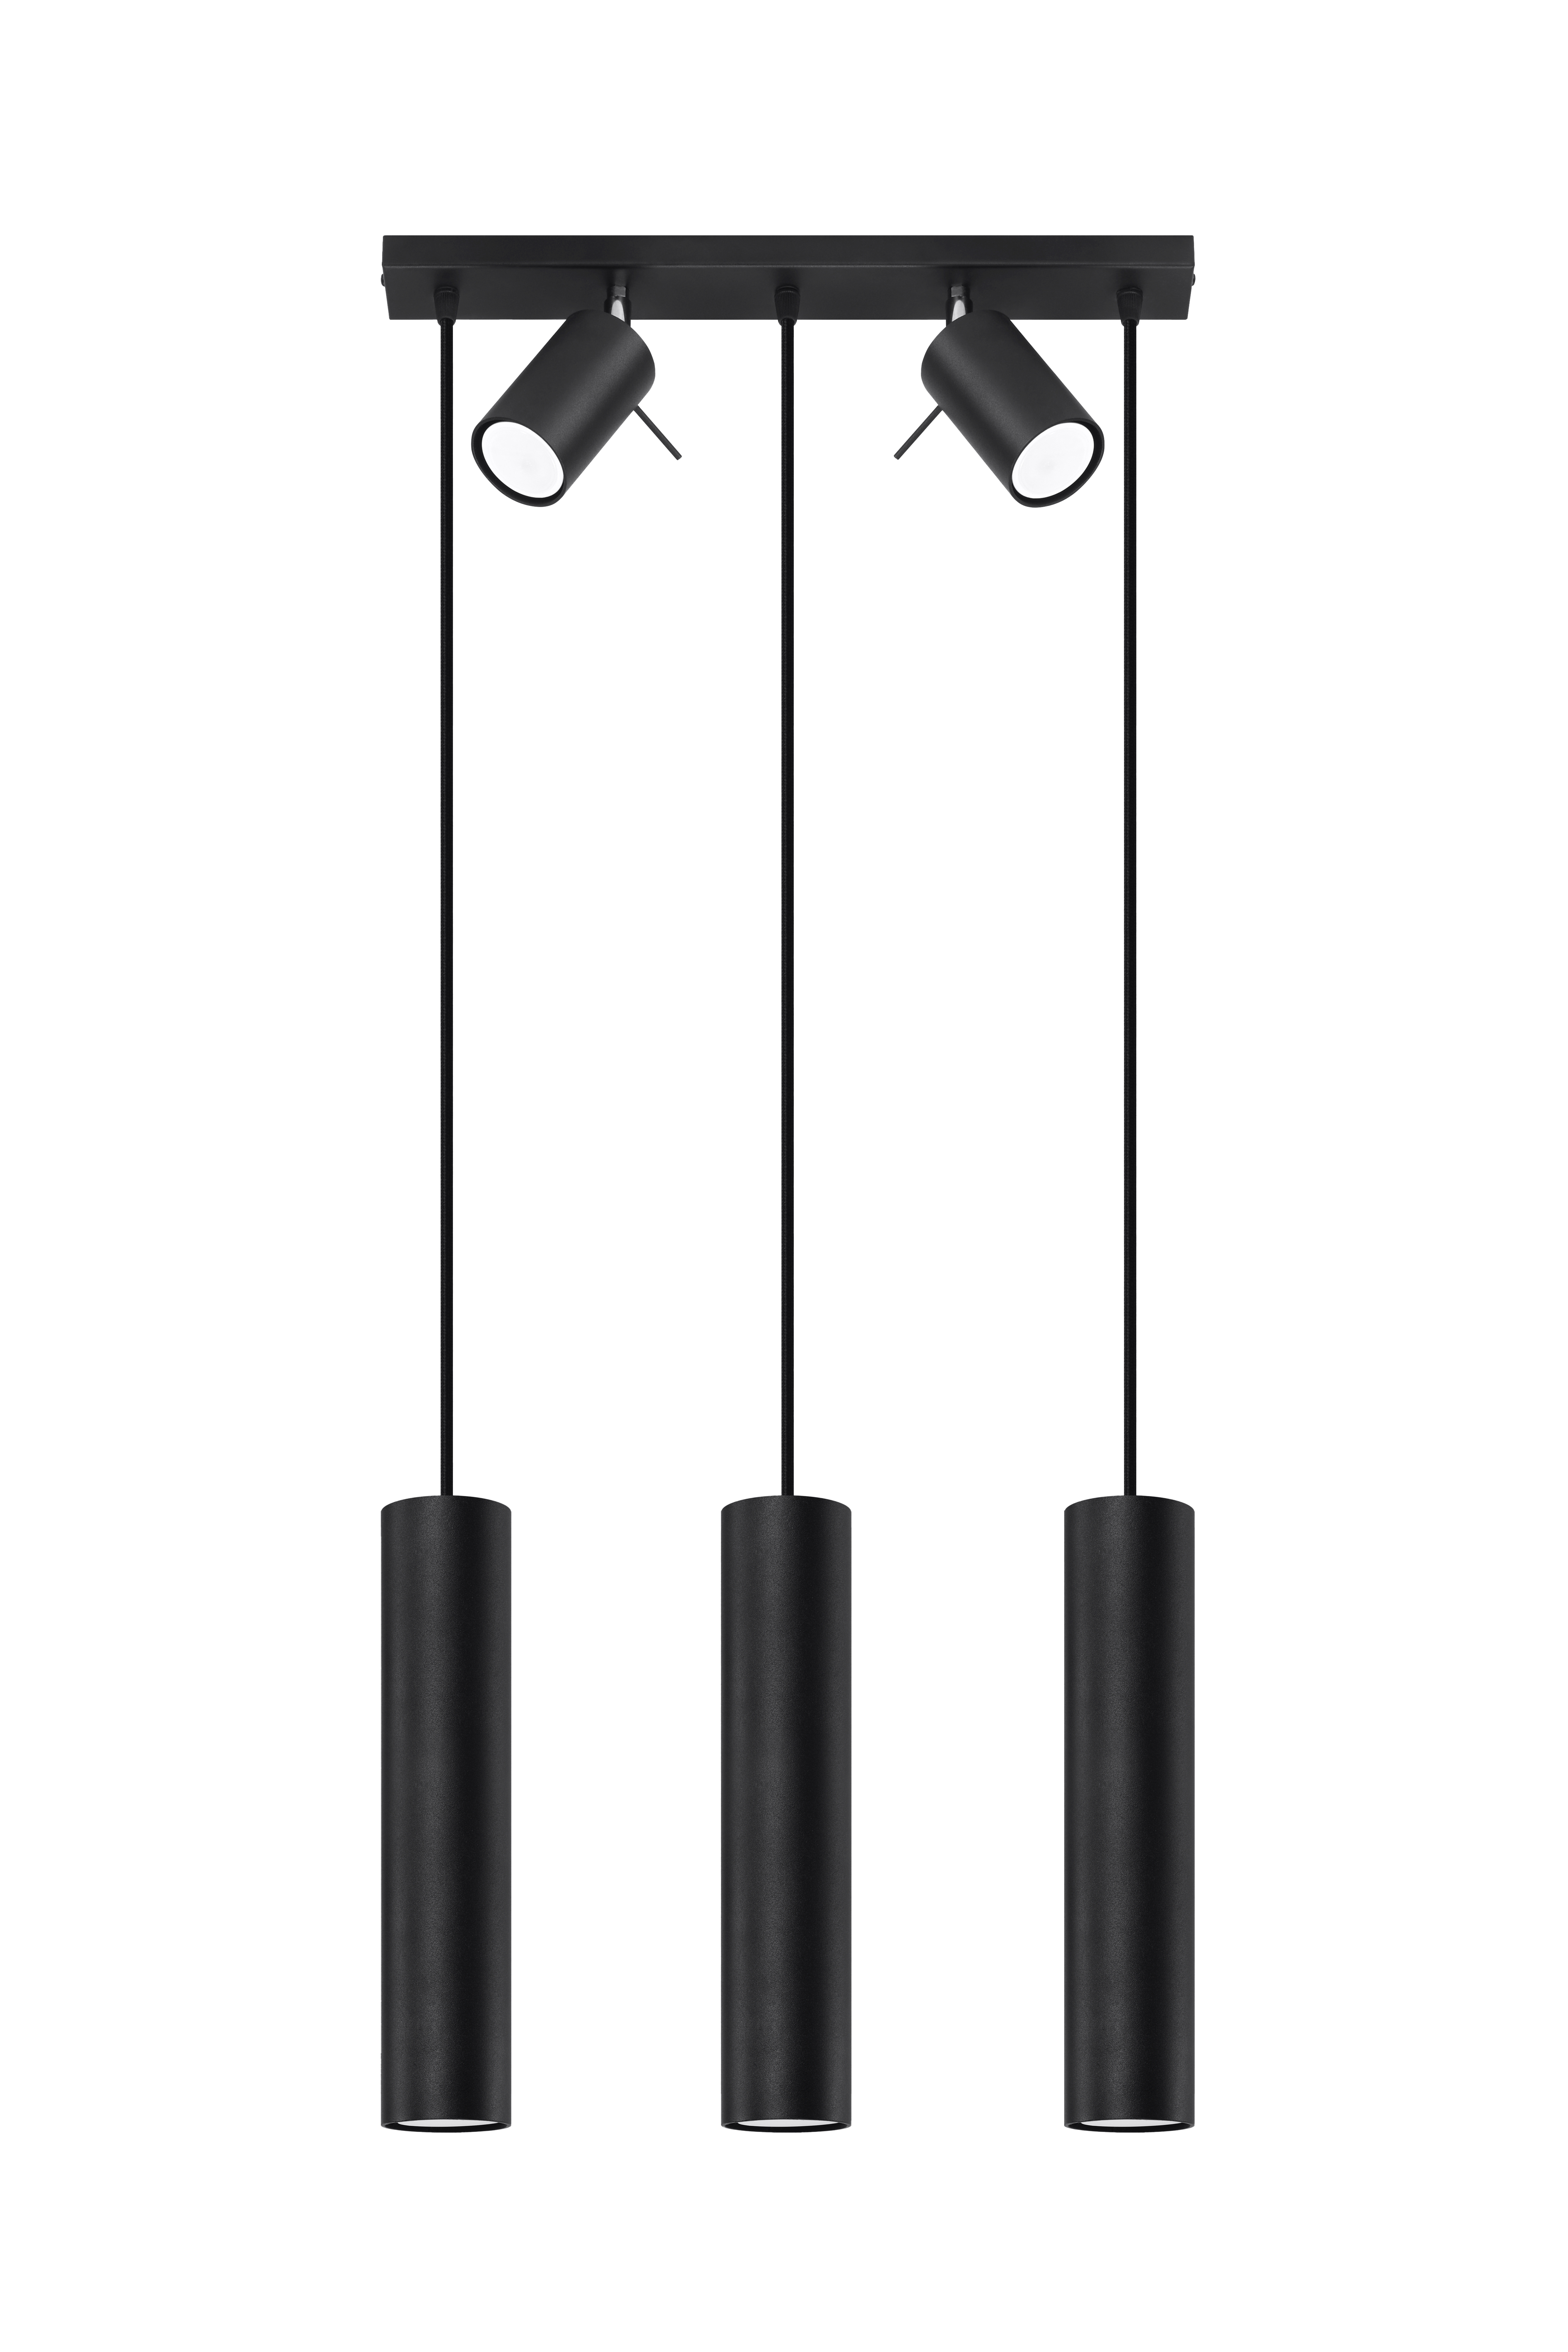 Kombileuchte RING aus 3-flammiger Pendelleuchte und 2x Strahler schwarzer Stahlkorpus inkl. LED warmweiß 5x7W